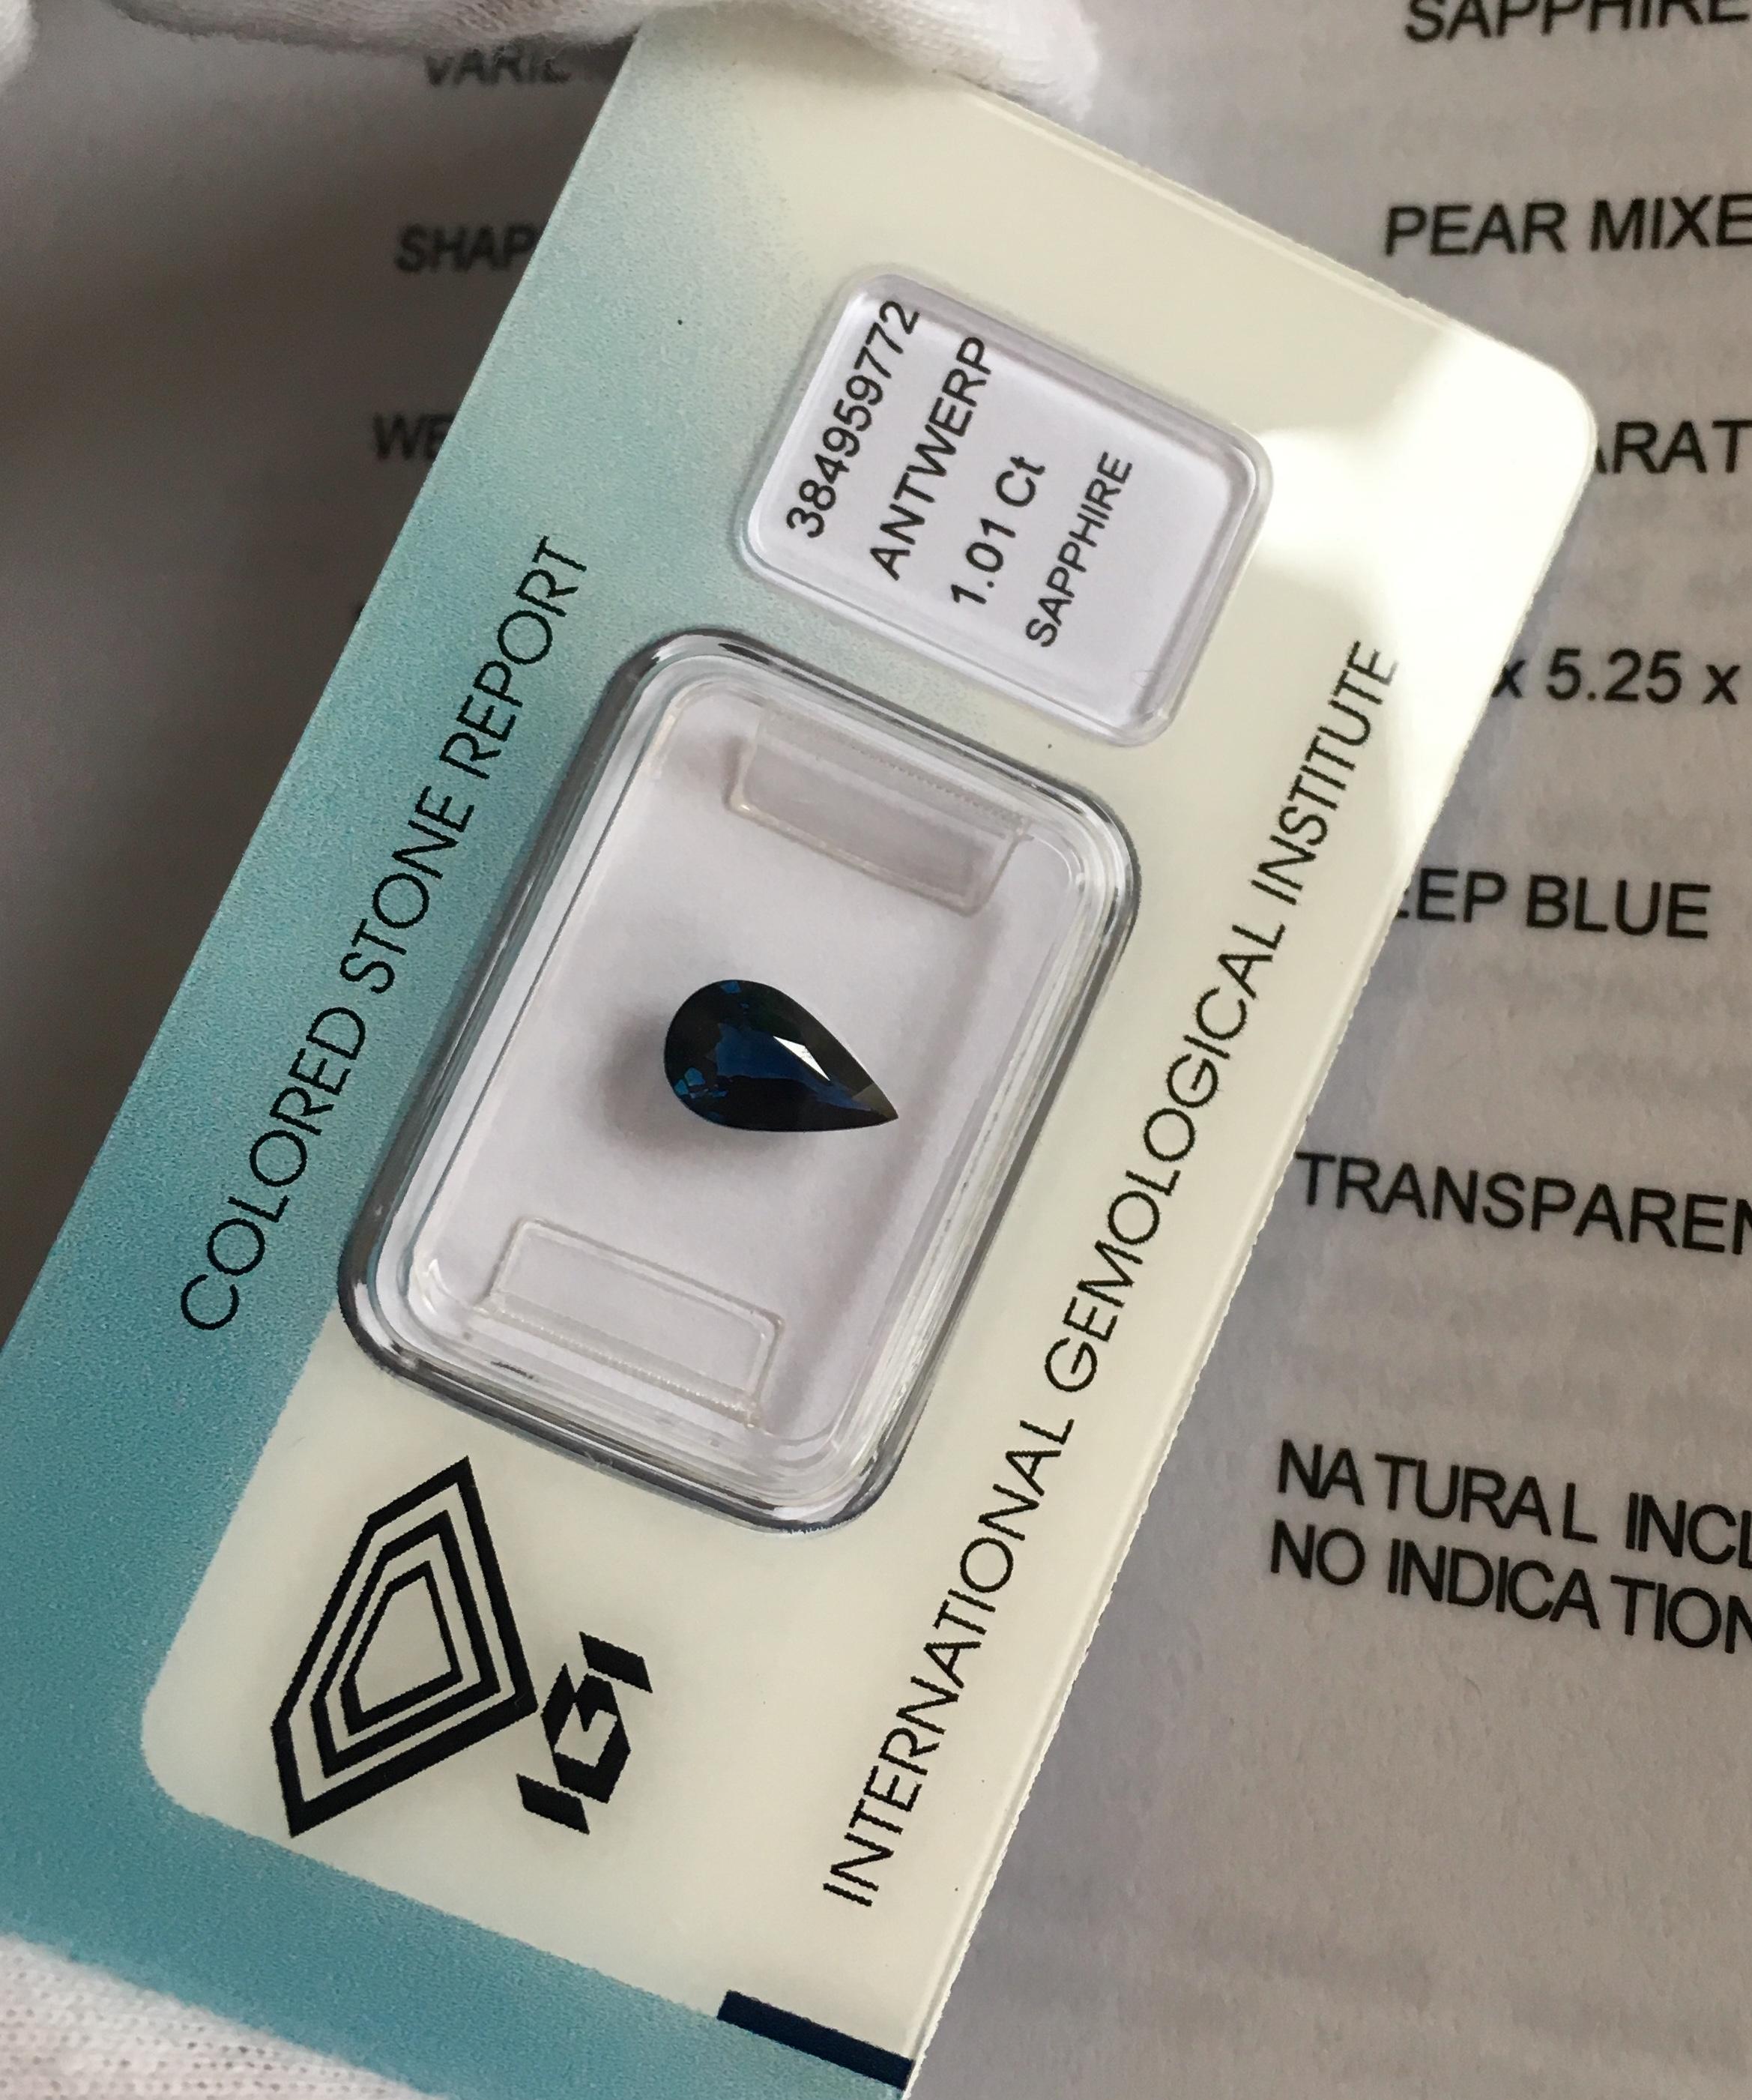 IGI Certified Untreated Deep Blue Sapphire 1.01 Carat Pear Teardrop Cut Gem 2